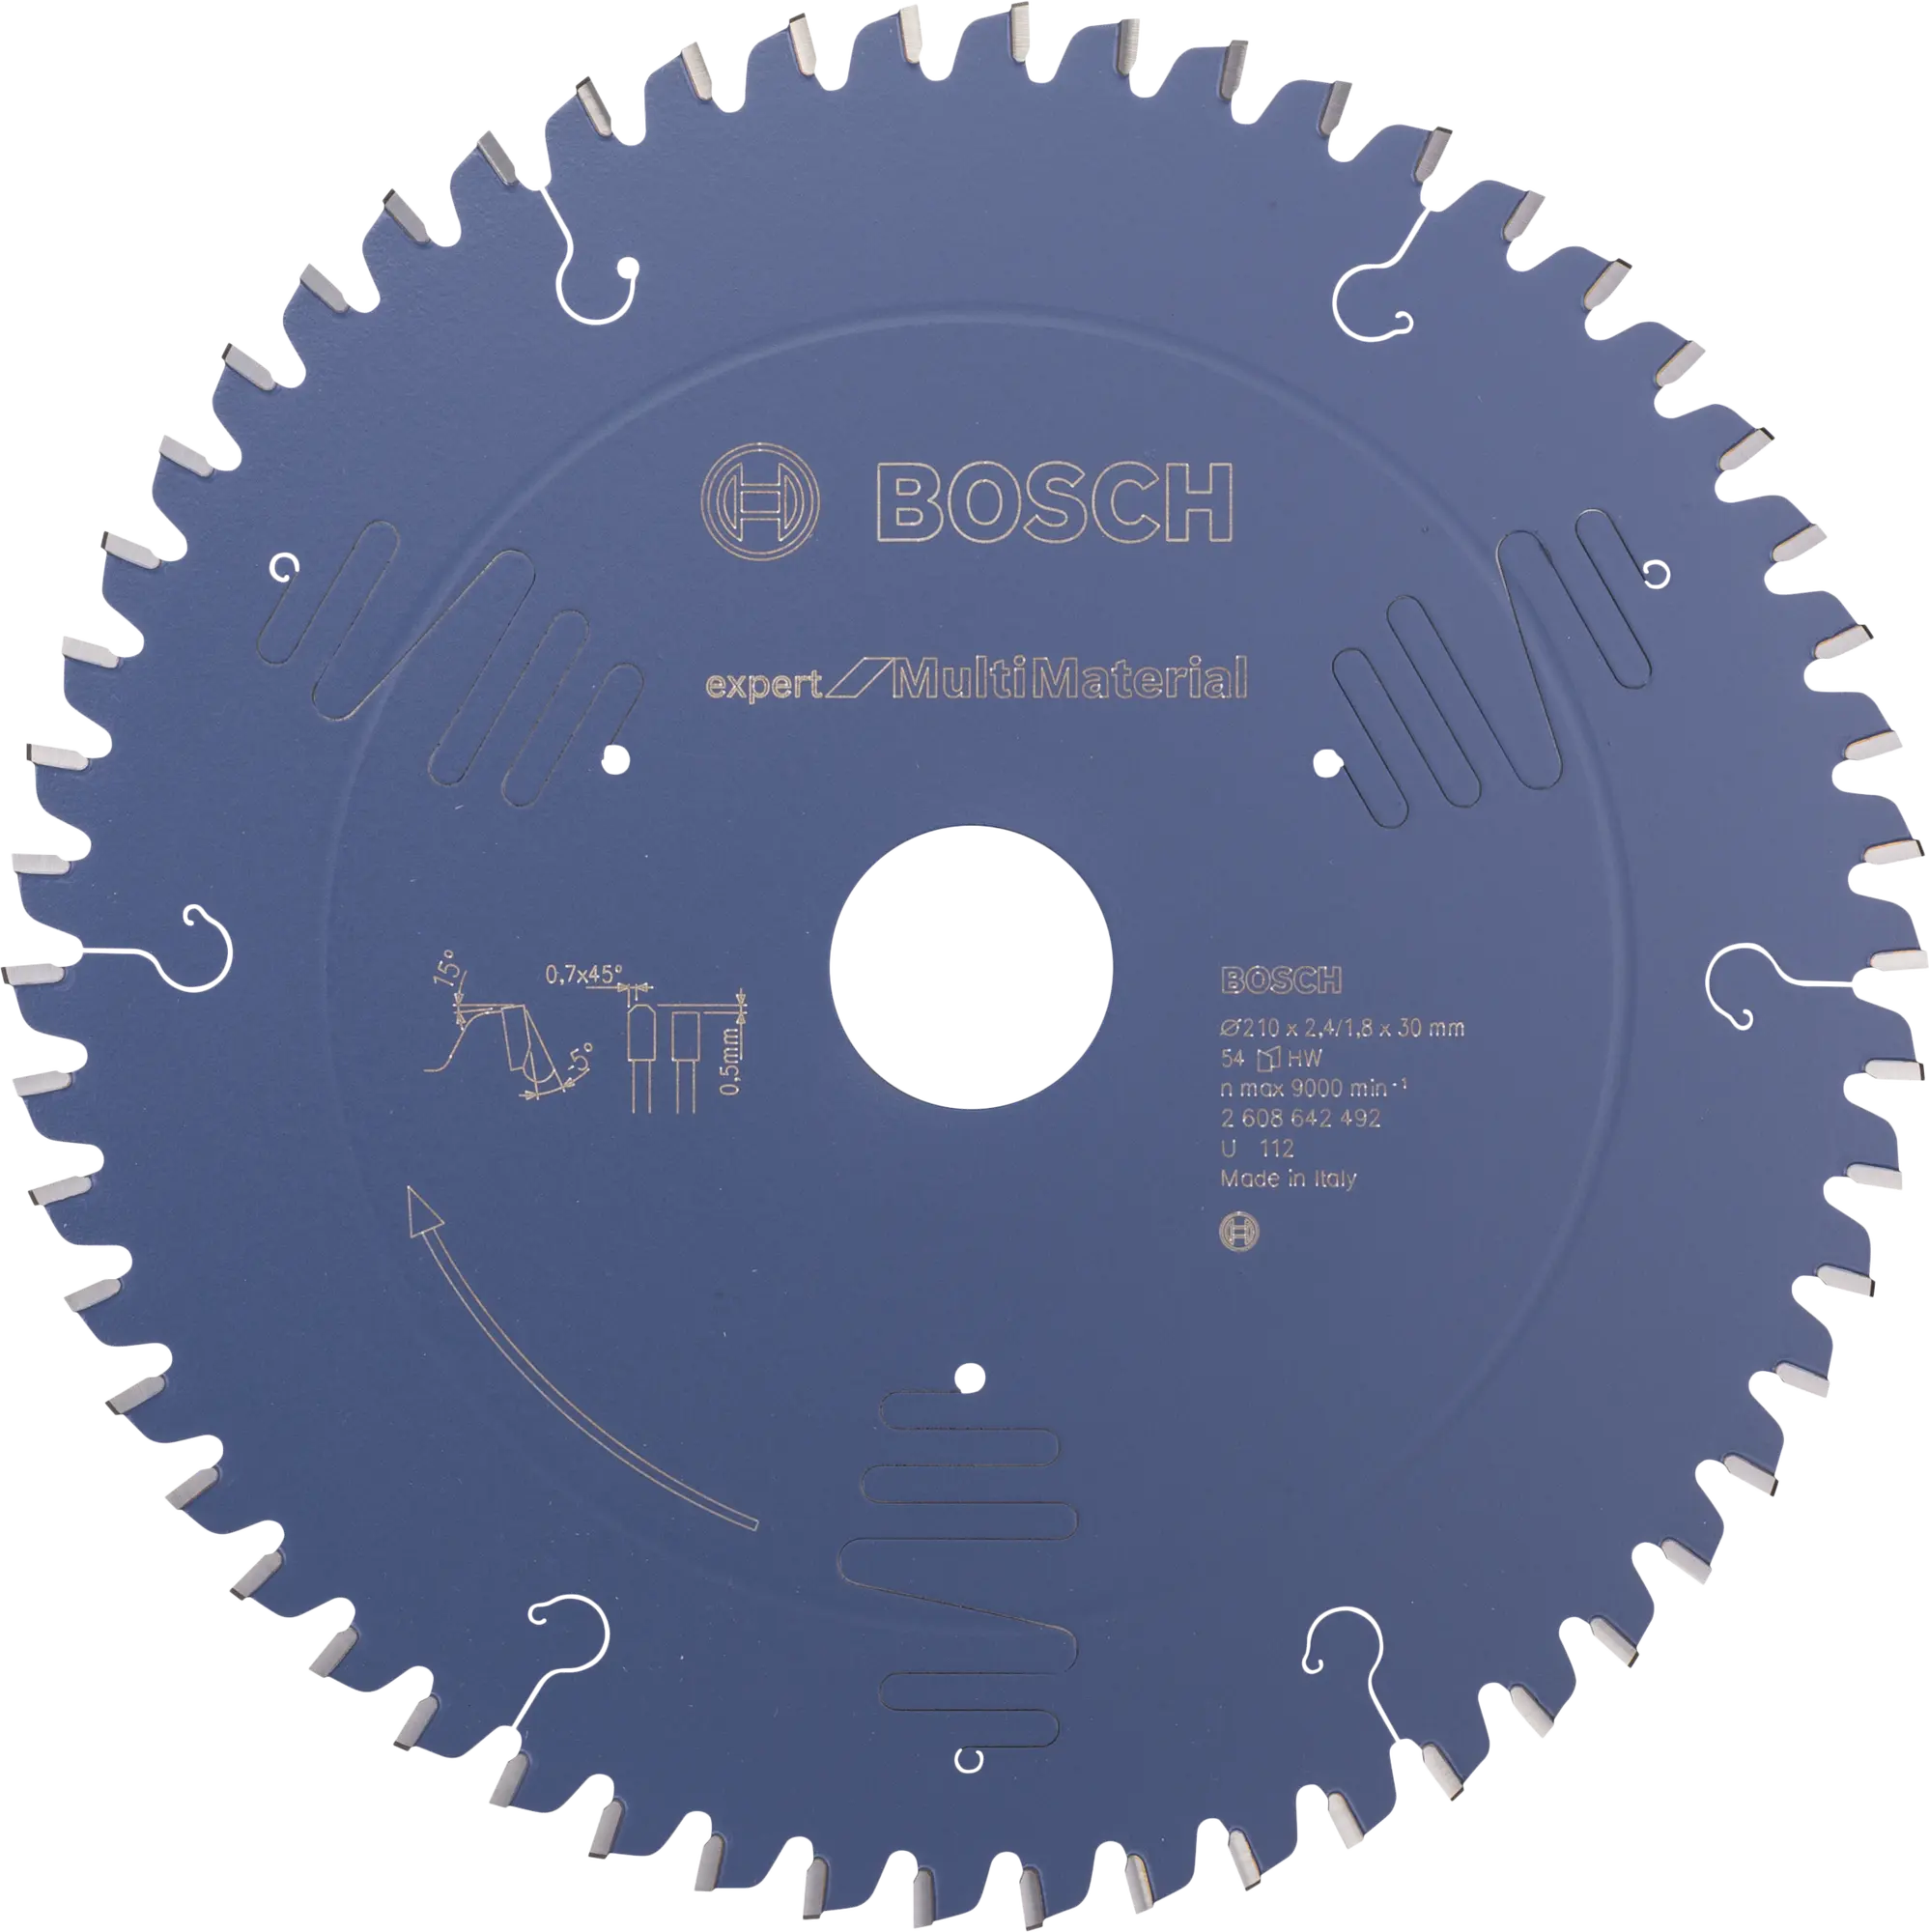 Disco de sierra circular bosch expert multimaterial, 210 x 30 y 54 dientes